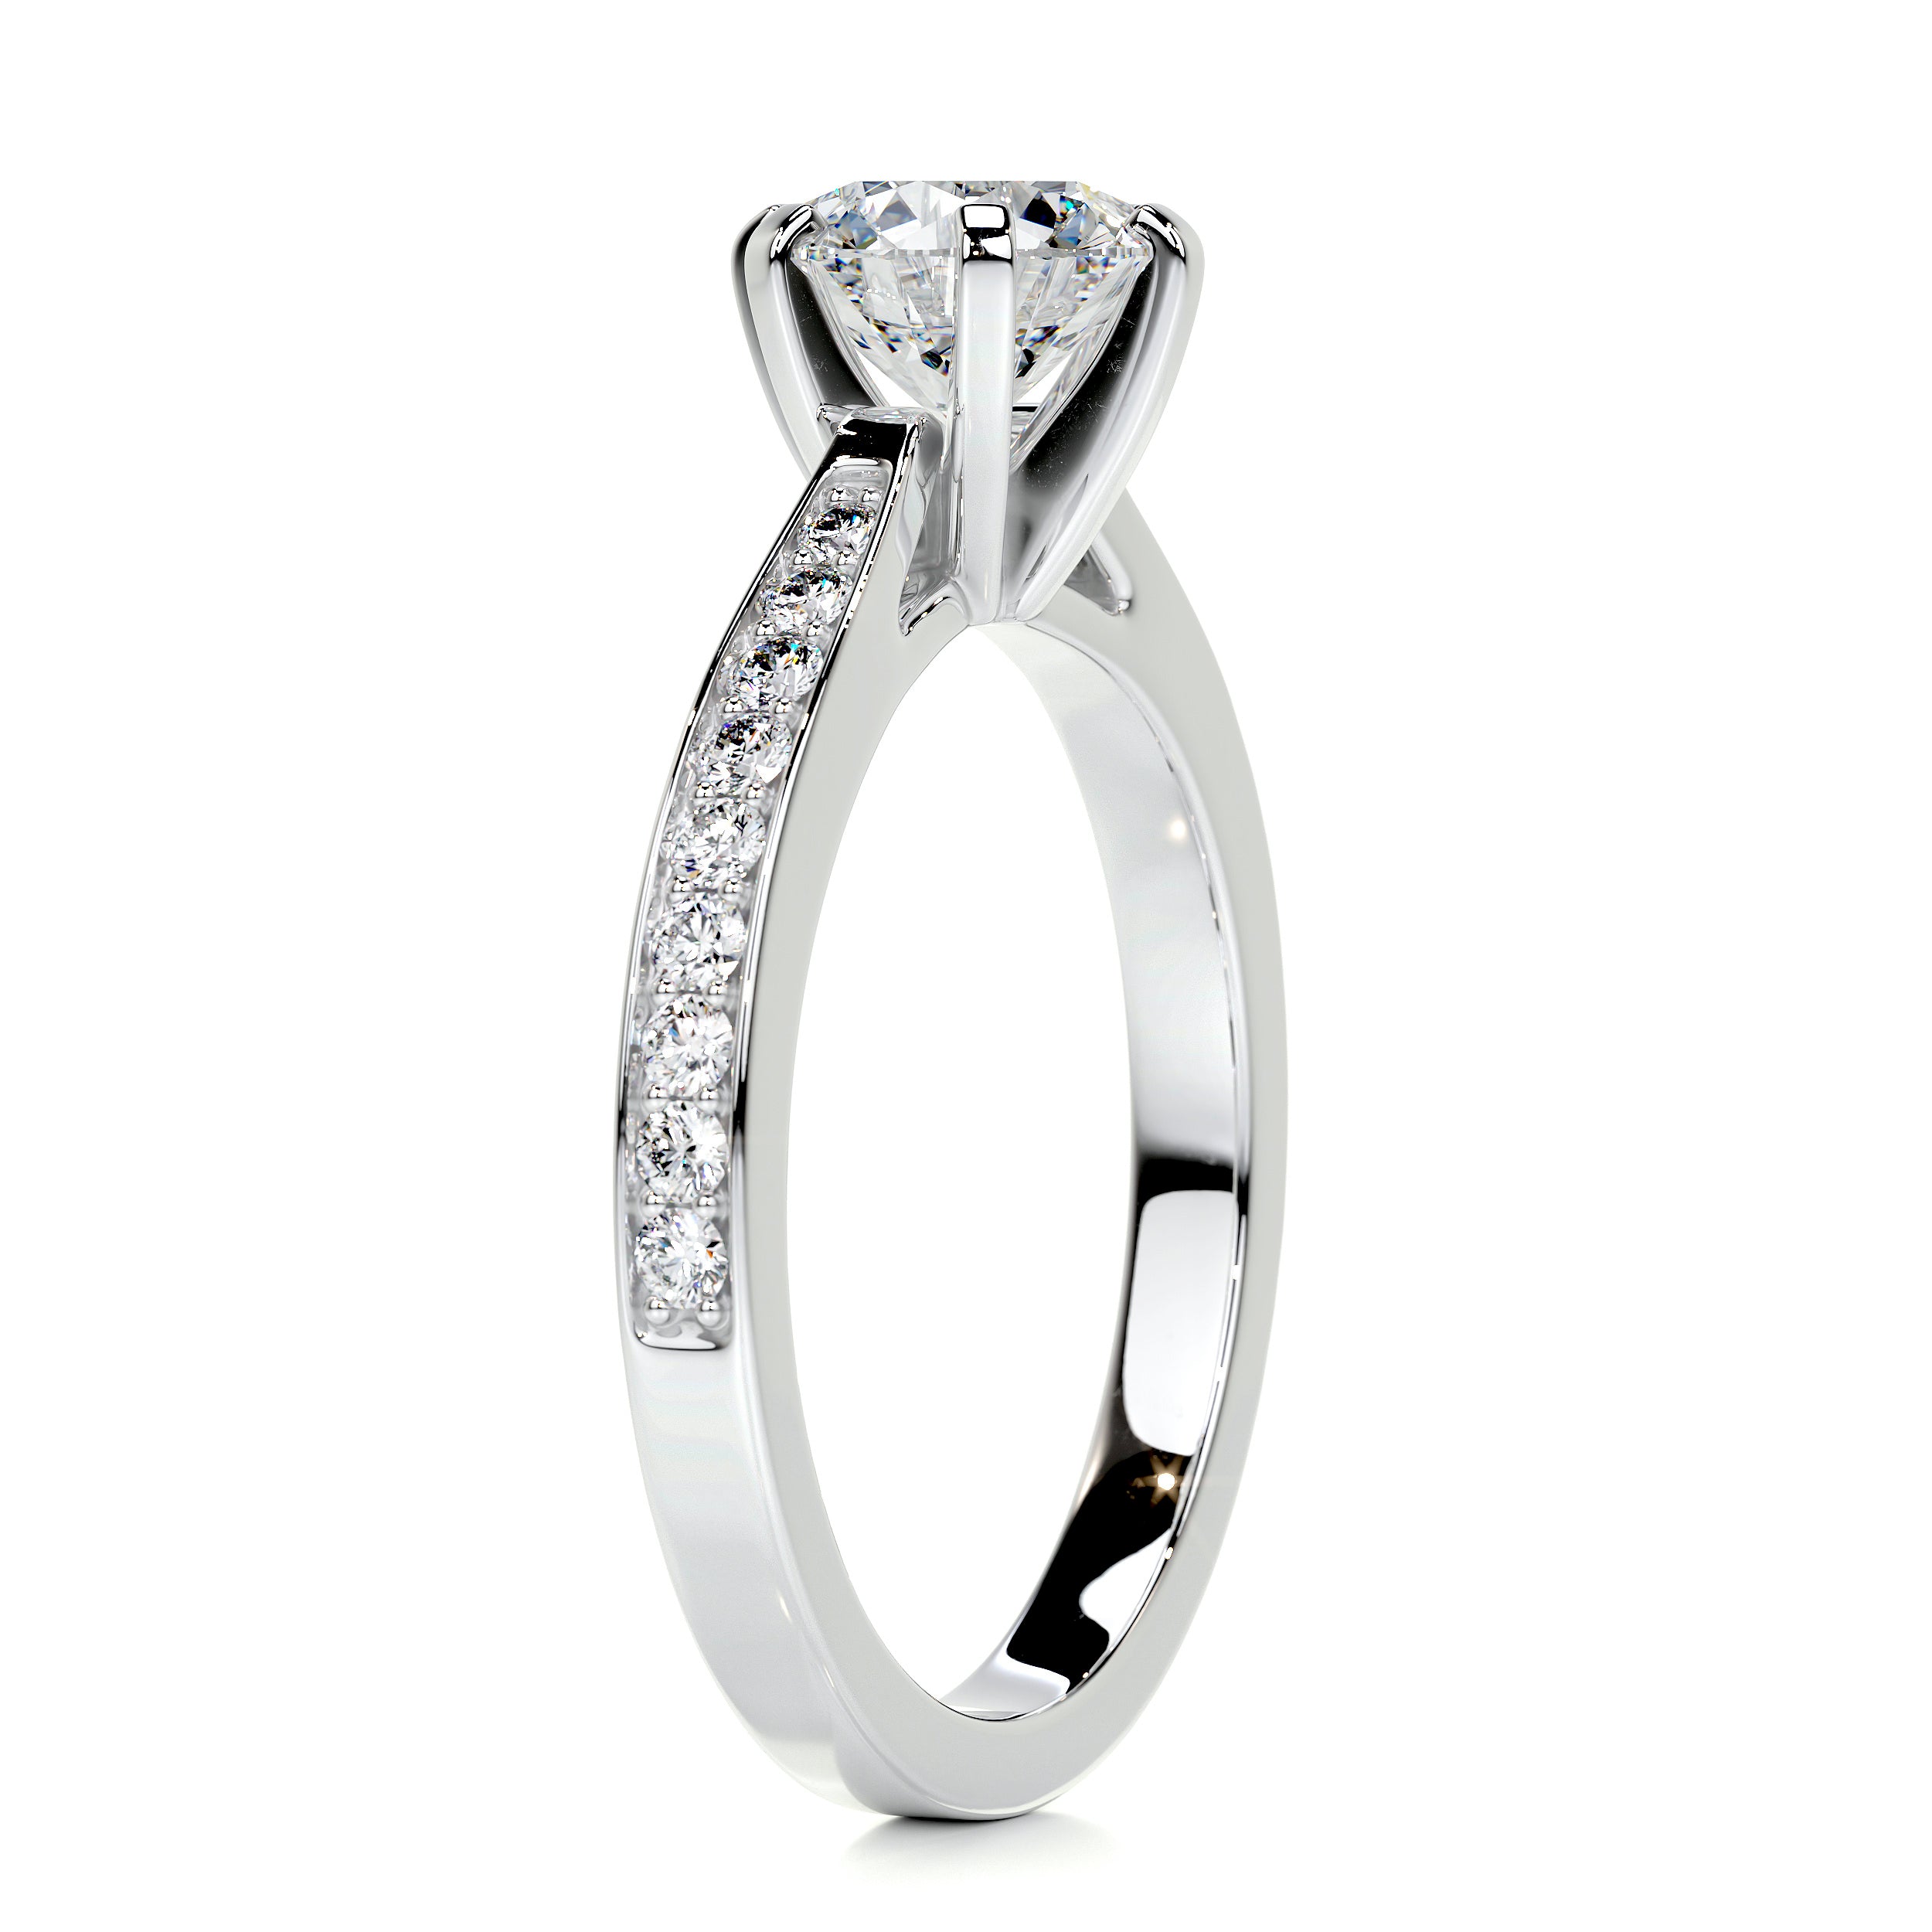 Talia Diamond Engagement Ring   (1.2 Carat) - Platinum